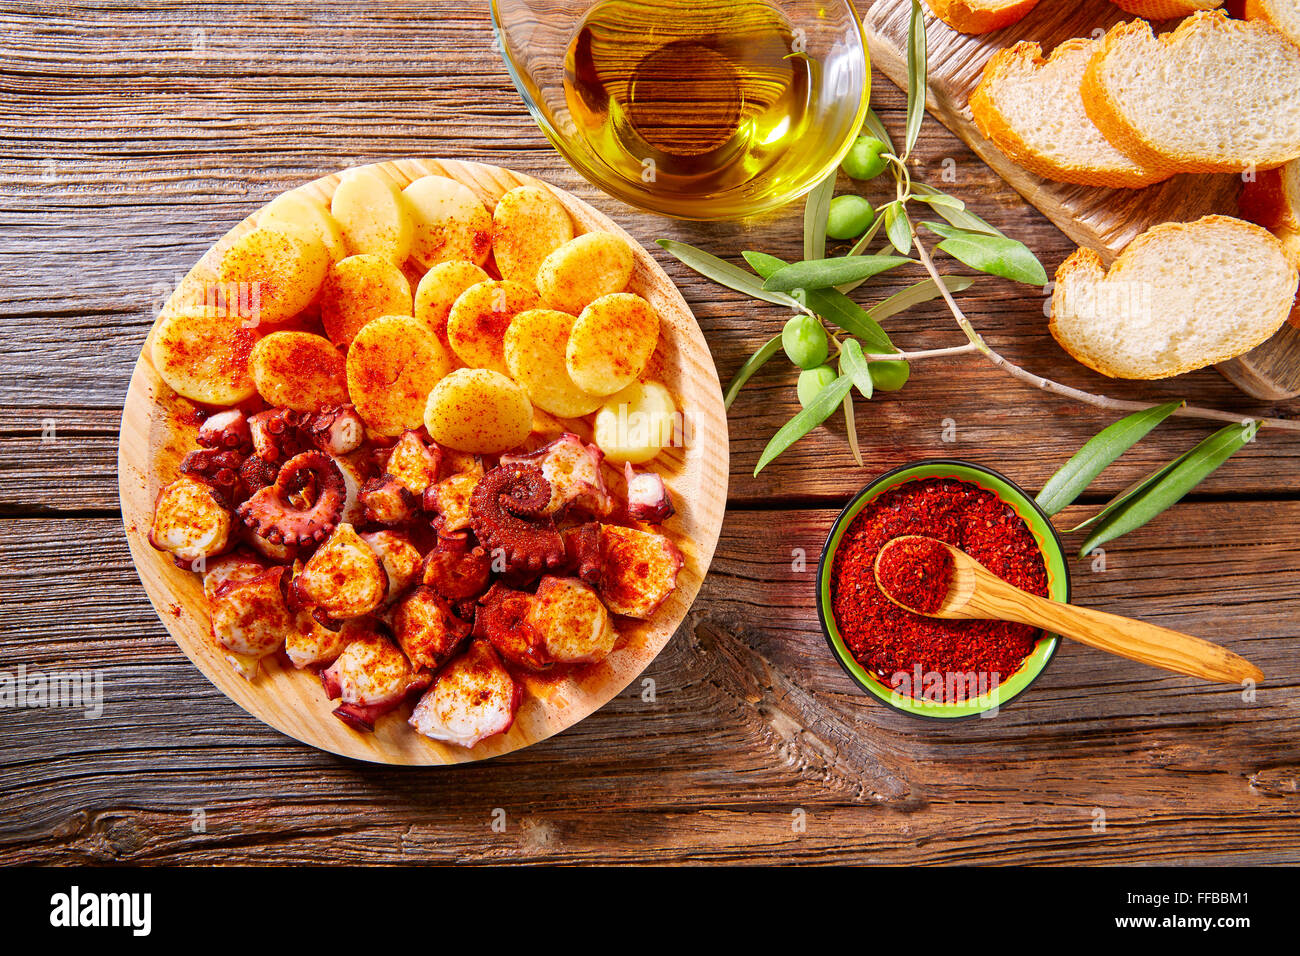 Pulpo a Feira tapas avec octopus pommes gallega style et paprika recette d'Espagne Banque D'Images